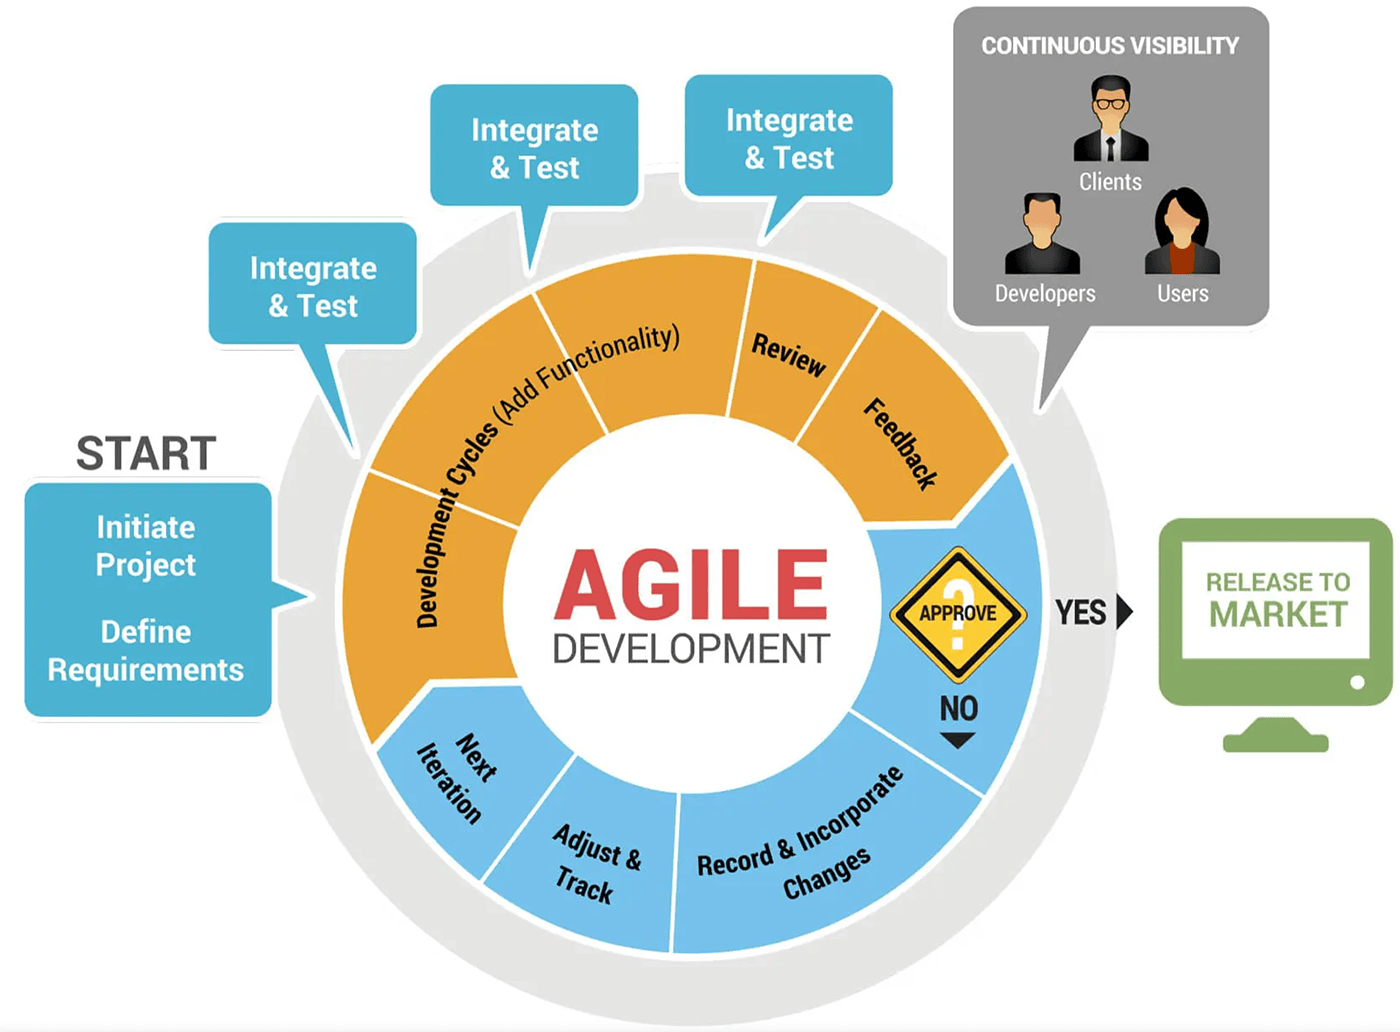 Steps of the Agile development methodology